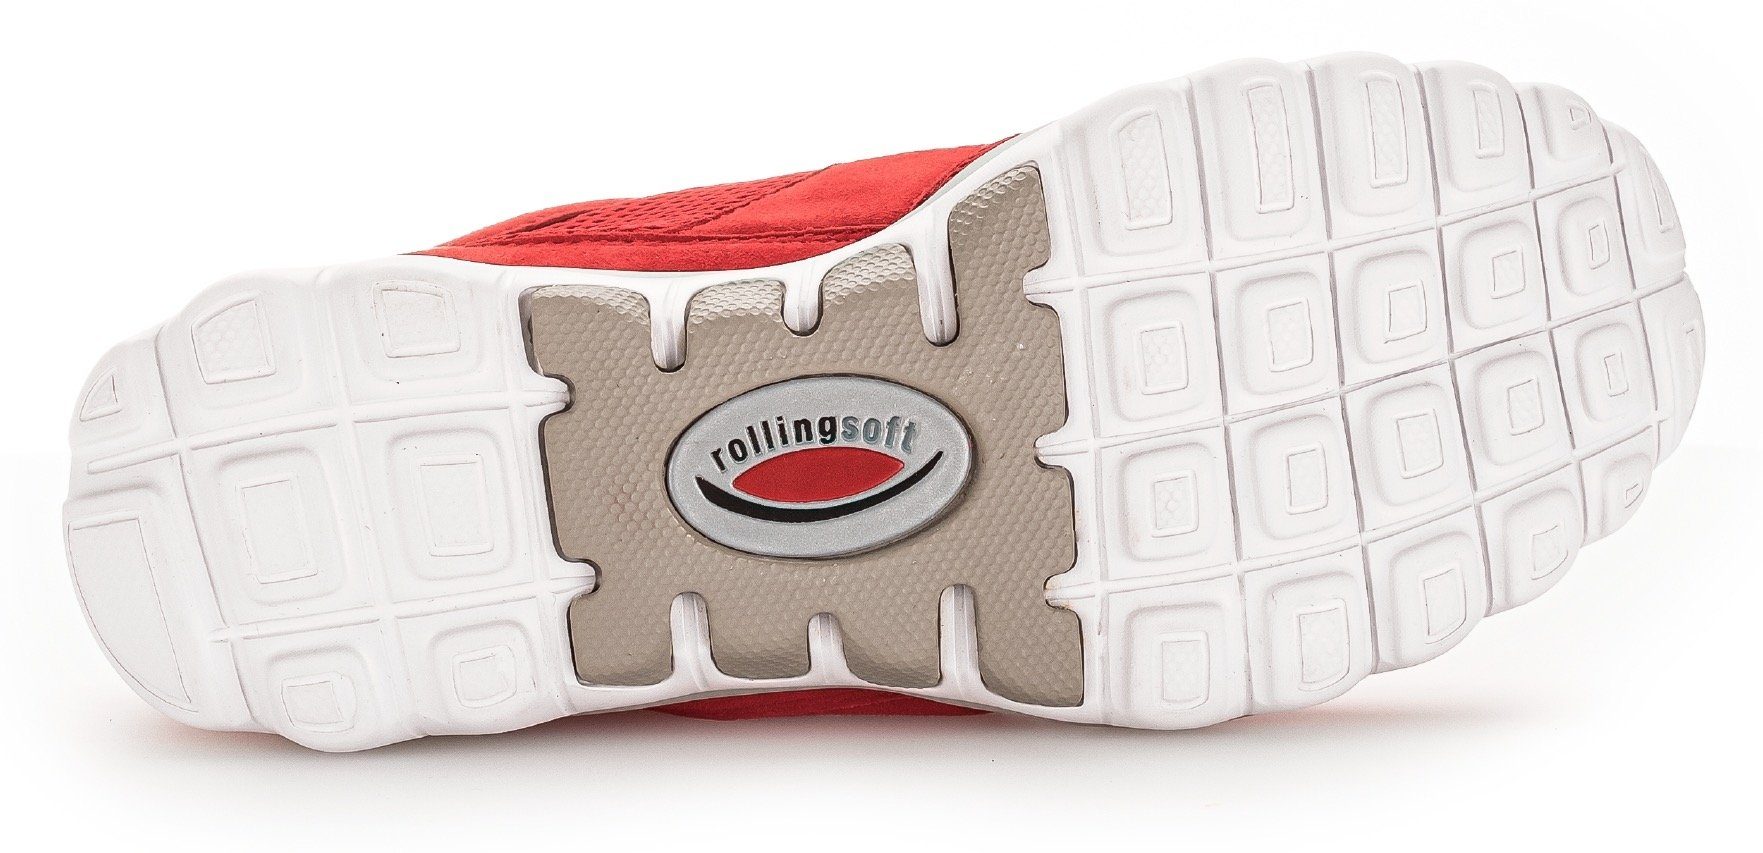 Gabor Rollingsoft rot mit Logoschriftzug Keilsneaker